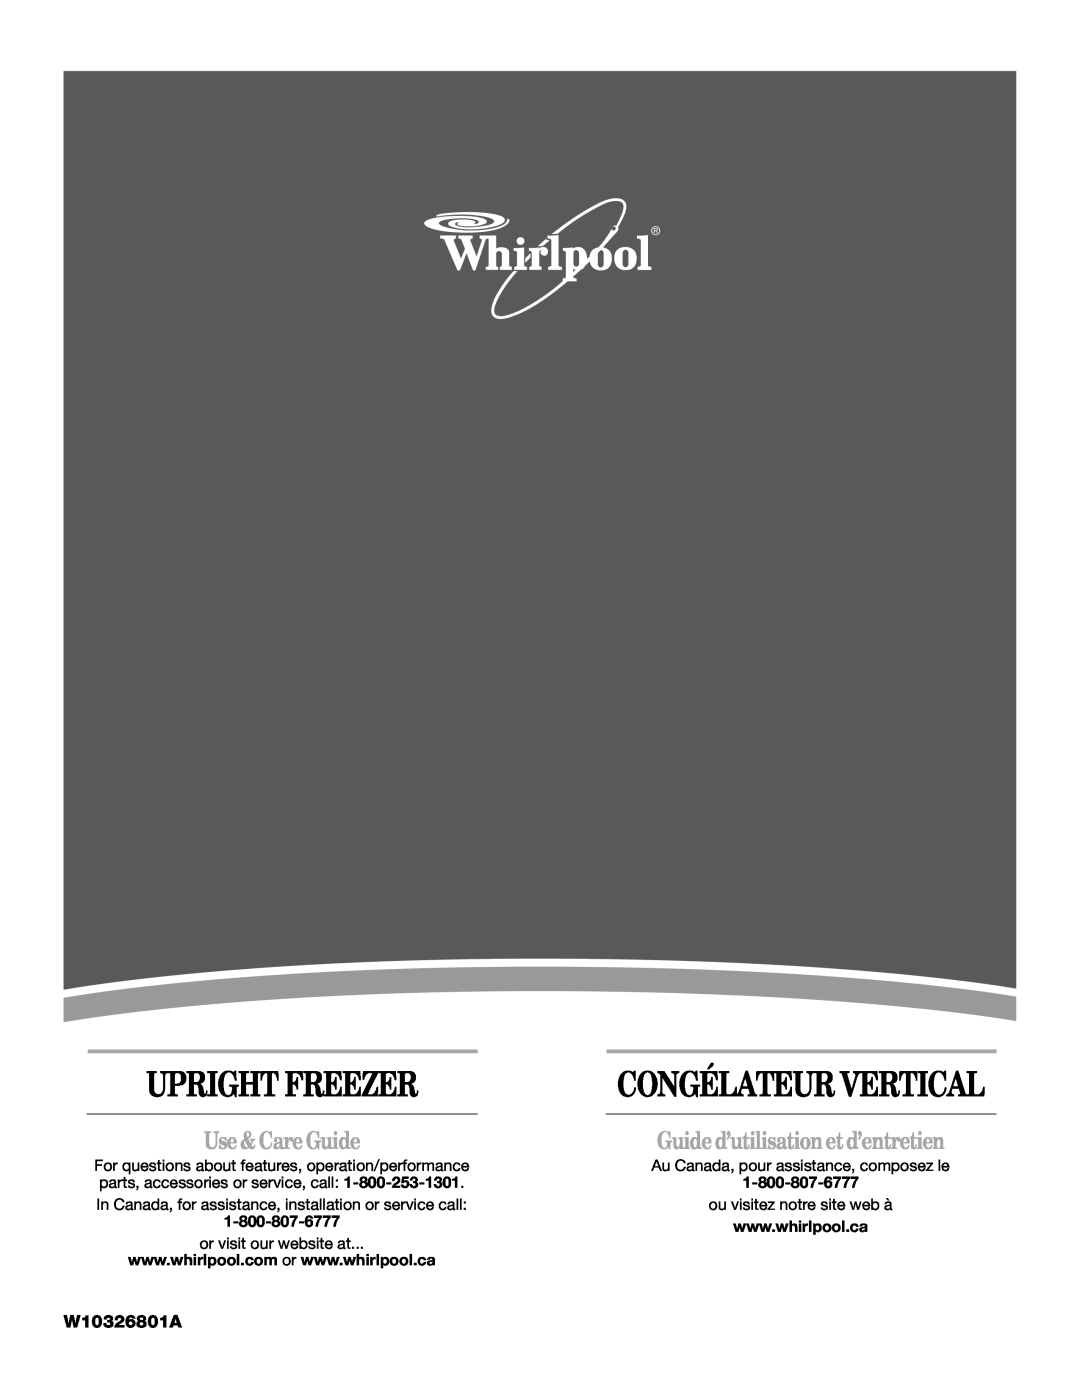 Whirlpool W10326801A manual Guide d’utilisation et d’entretien, Use &Care Guide, Upright Freezer, Congélateur Vertical 